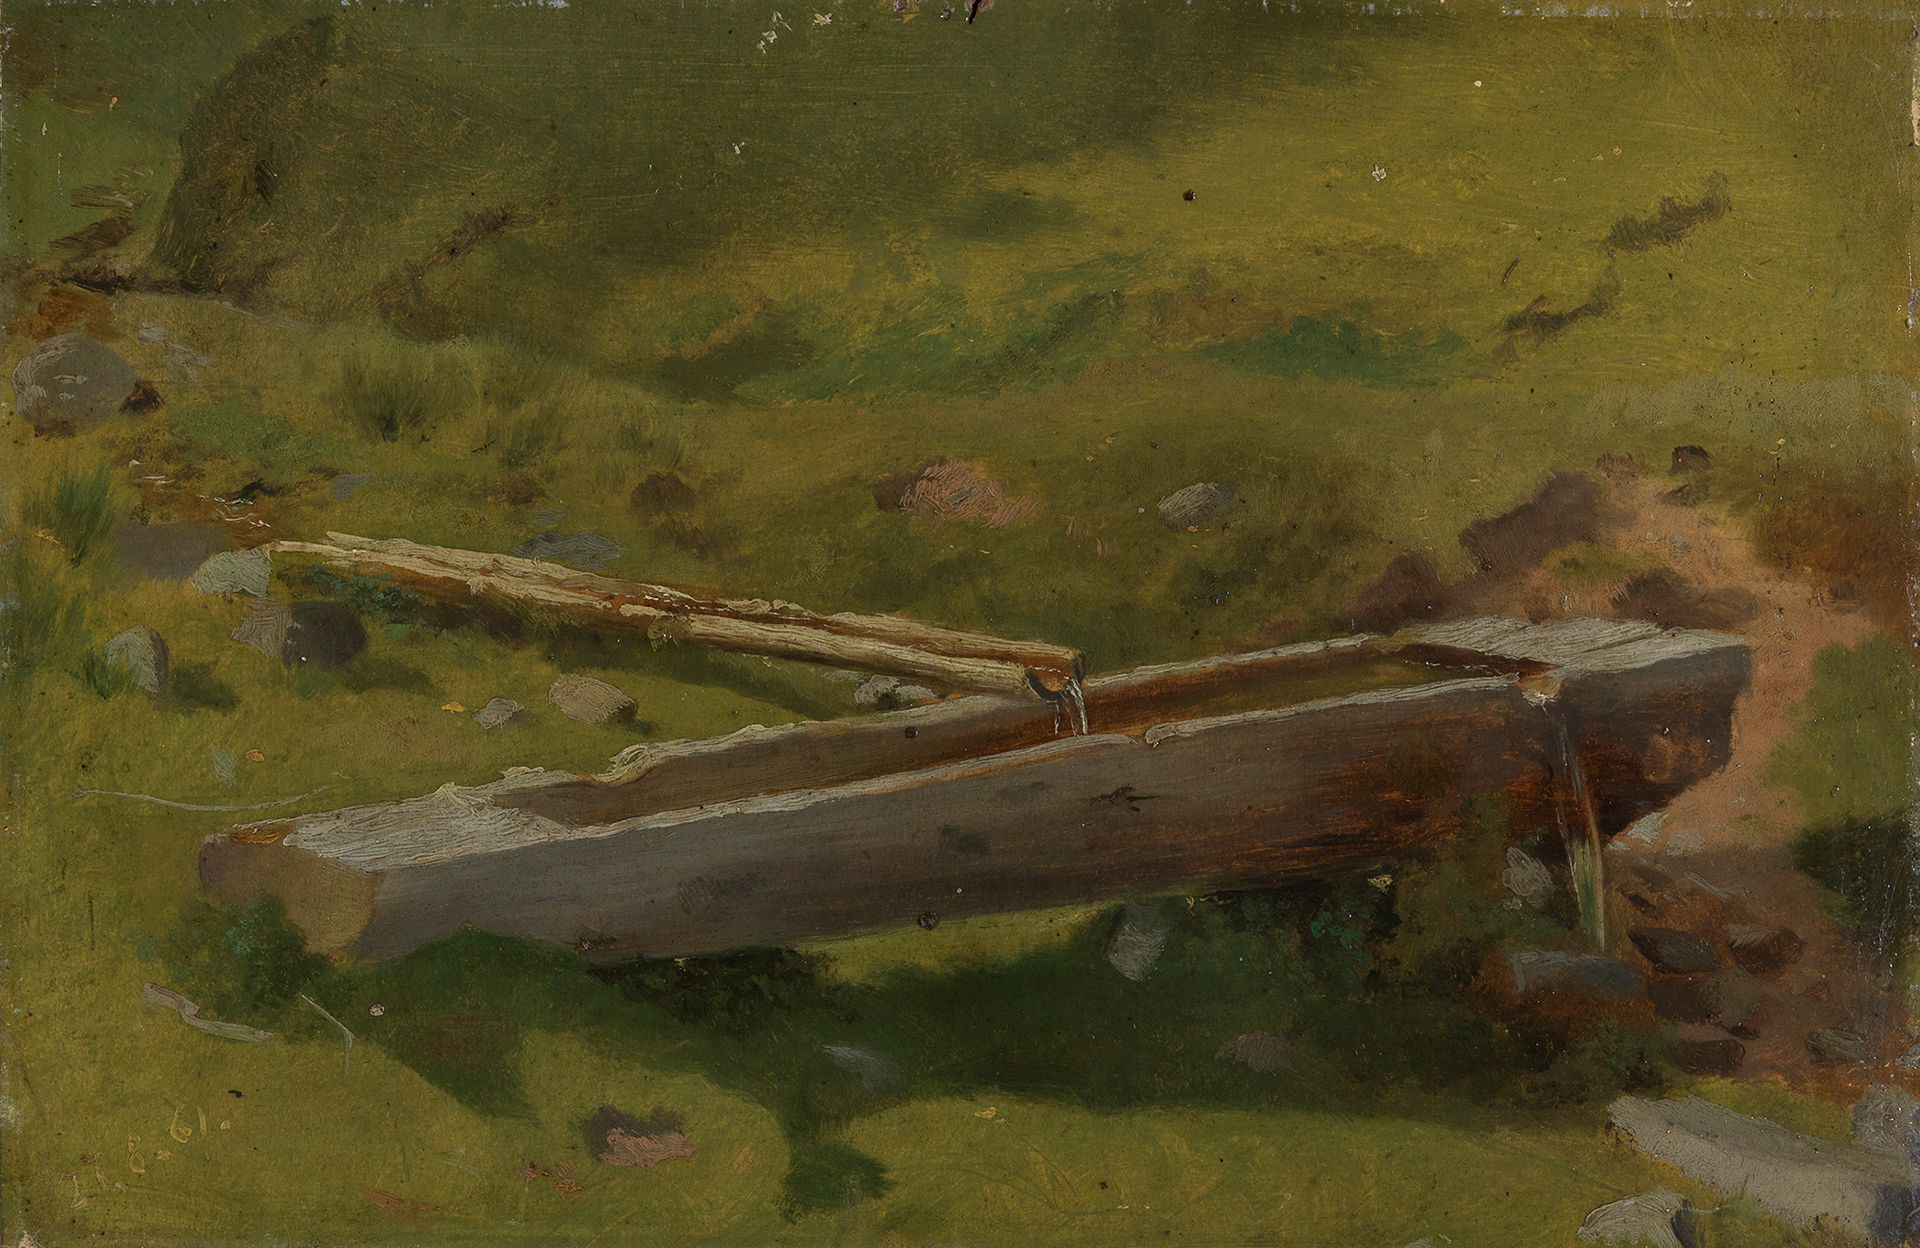 Das Landschaftsgemälde von Hans Thoma zeigt einen Baumstamm, der als Brunnentrog verwendet wird.